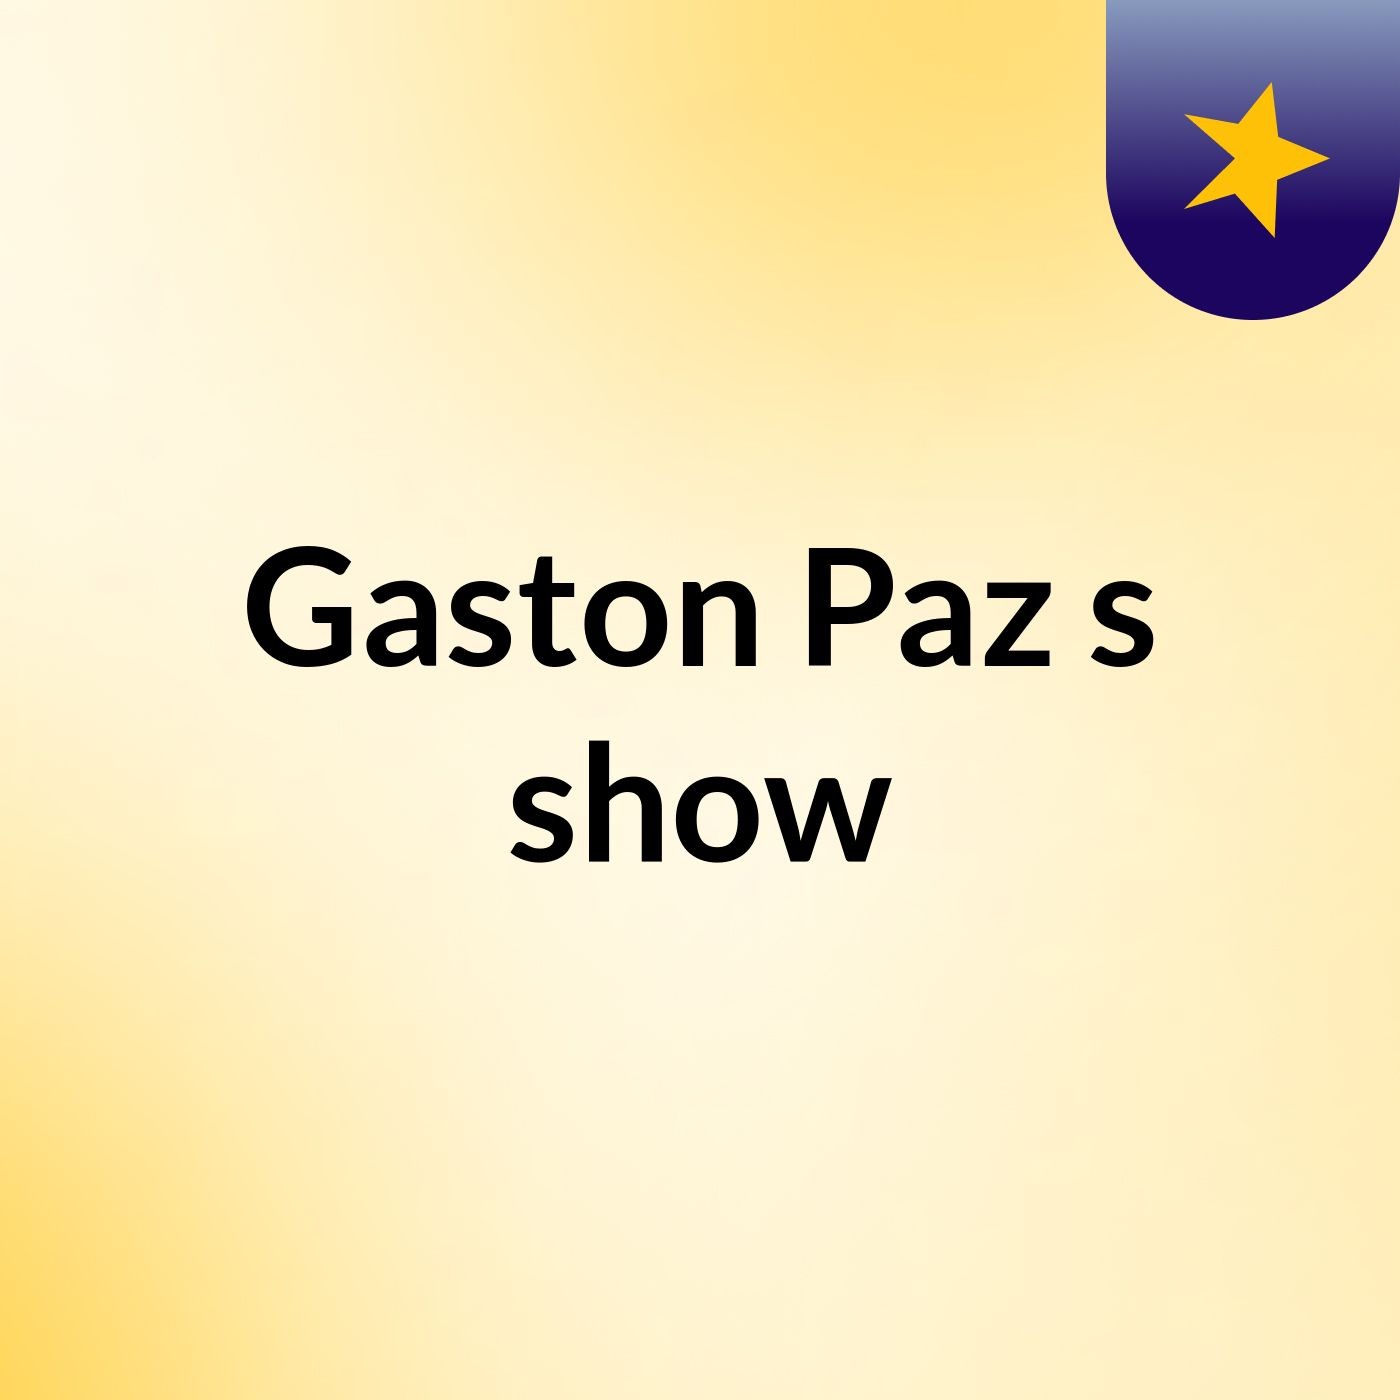 Gaston Paz's show